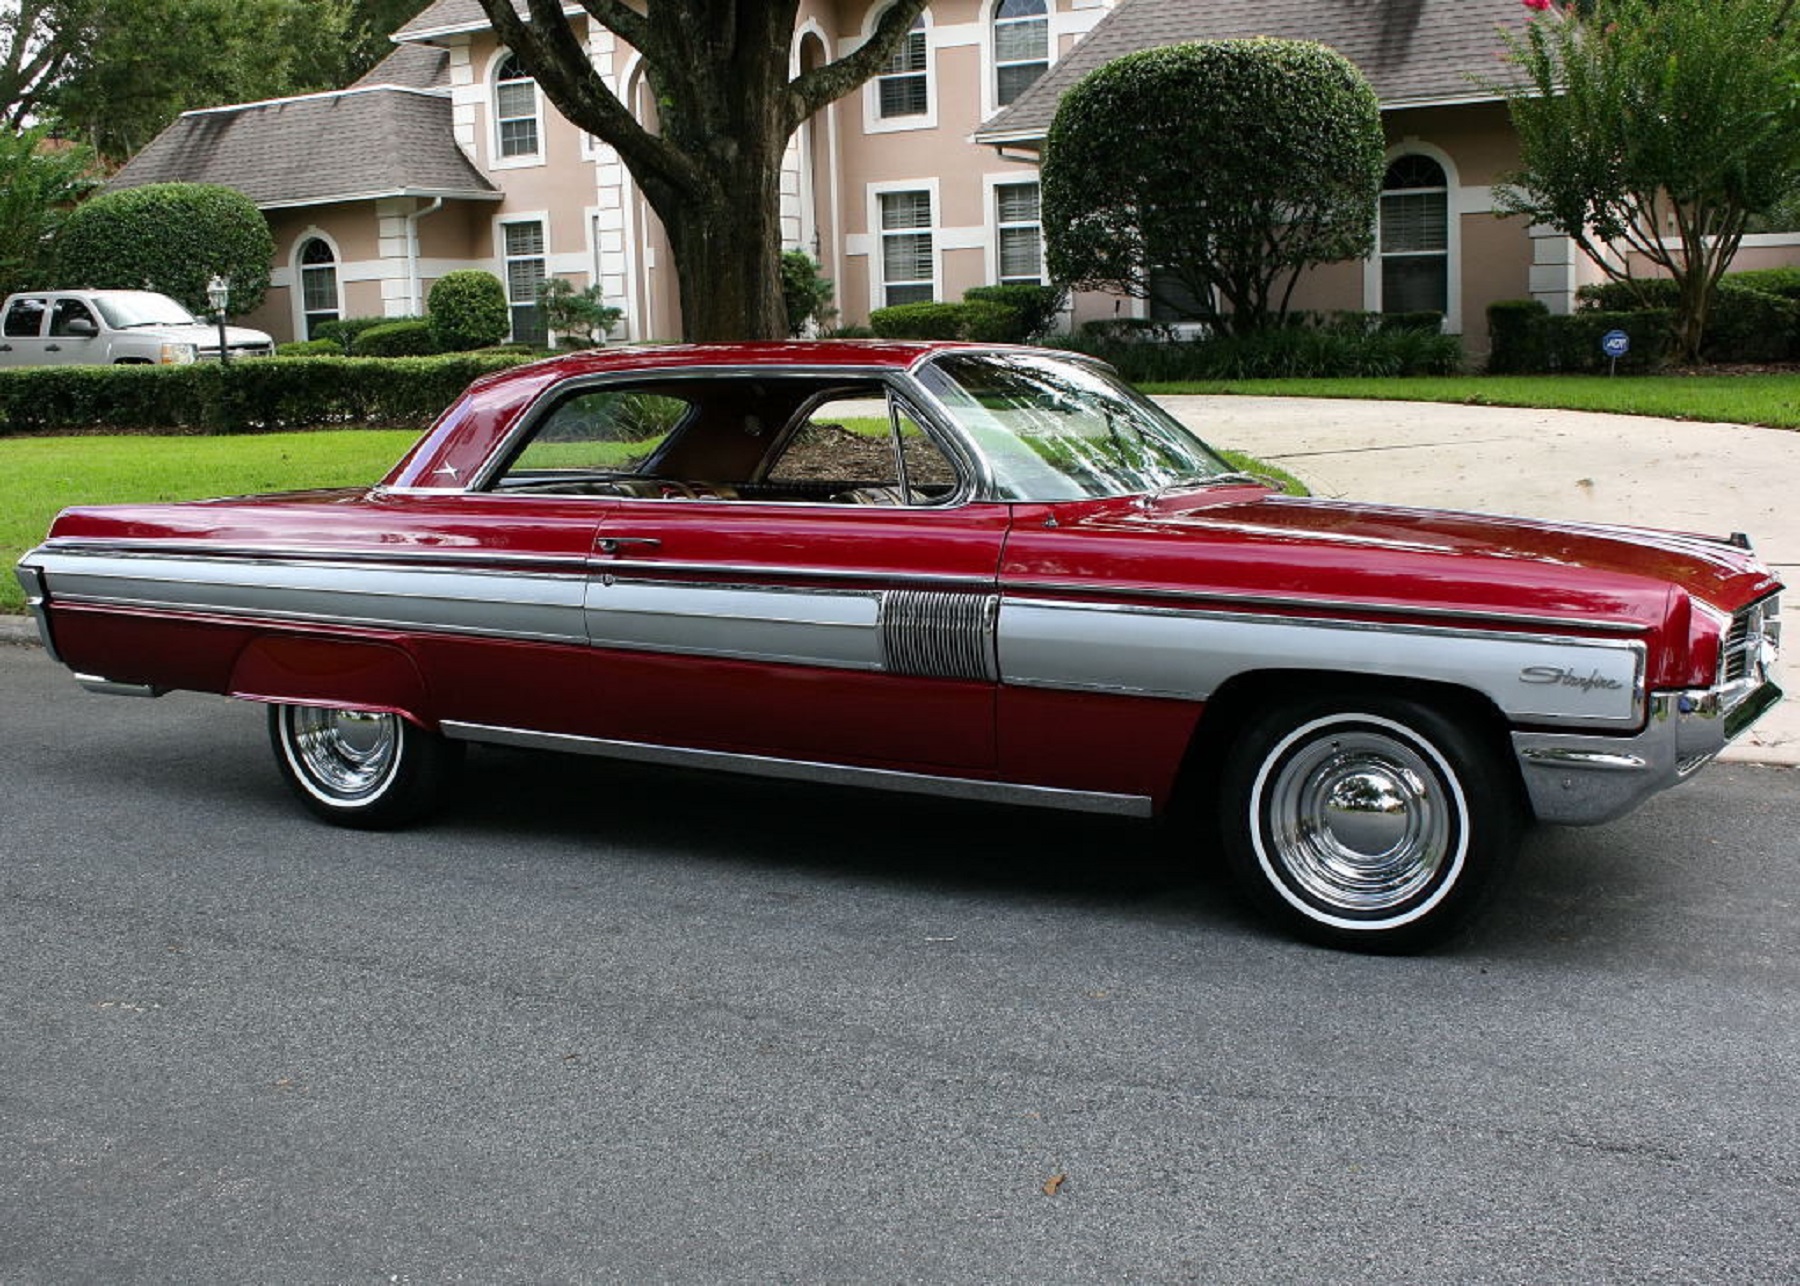 1962 Oldsmobile Starfire brings teenageyears memories Houston Chronicle